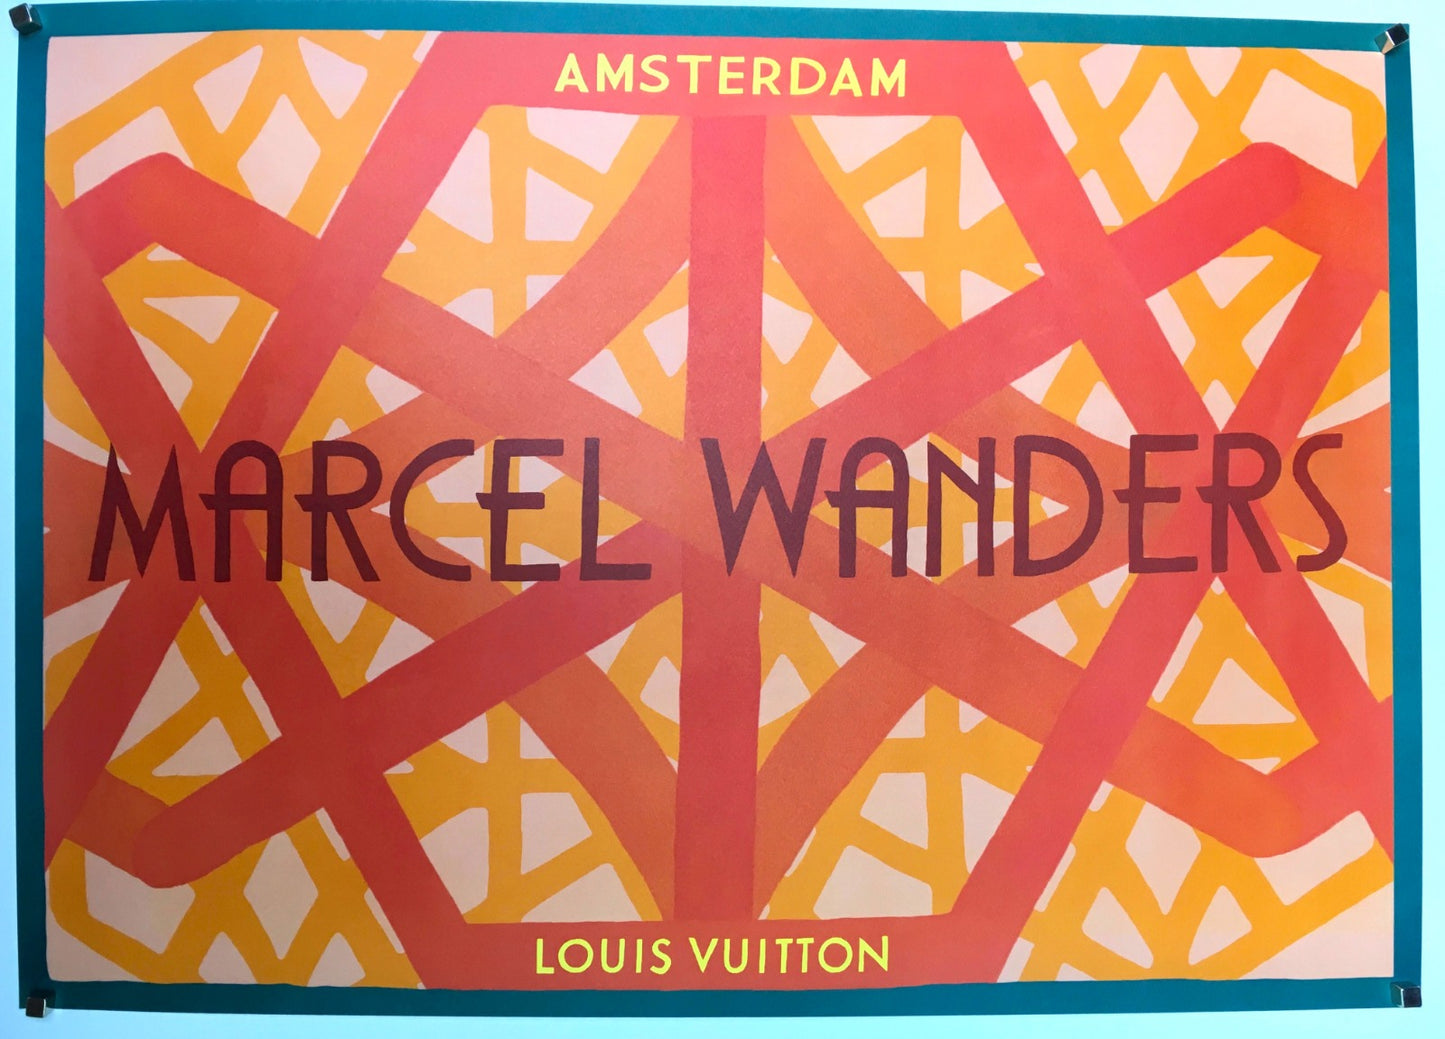 Manifesto Pubblicitario Louis Vuitton Amsterdam Diamond Screen 2017 Tortona4Arte